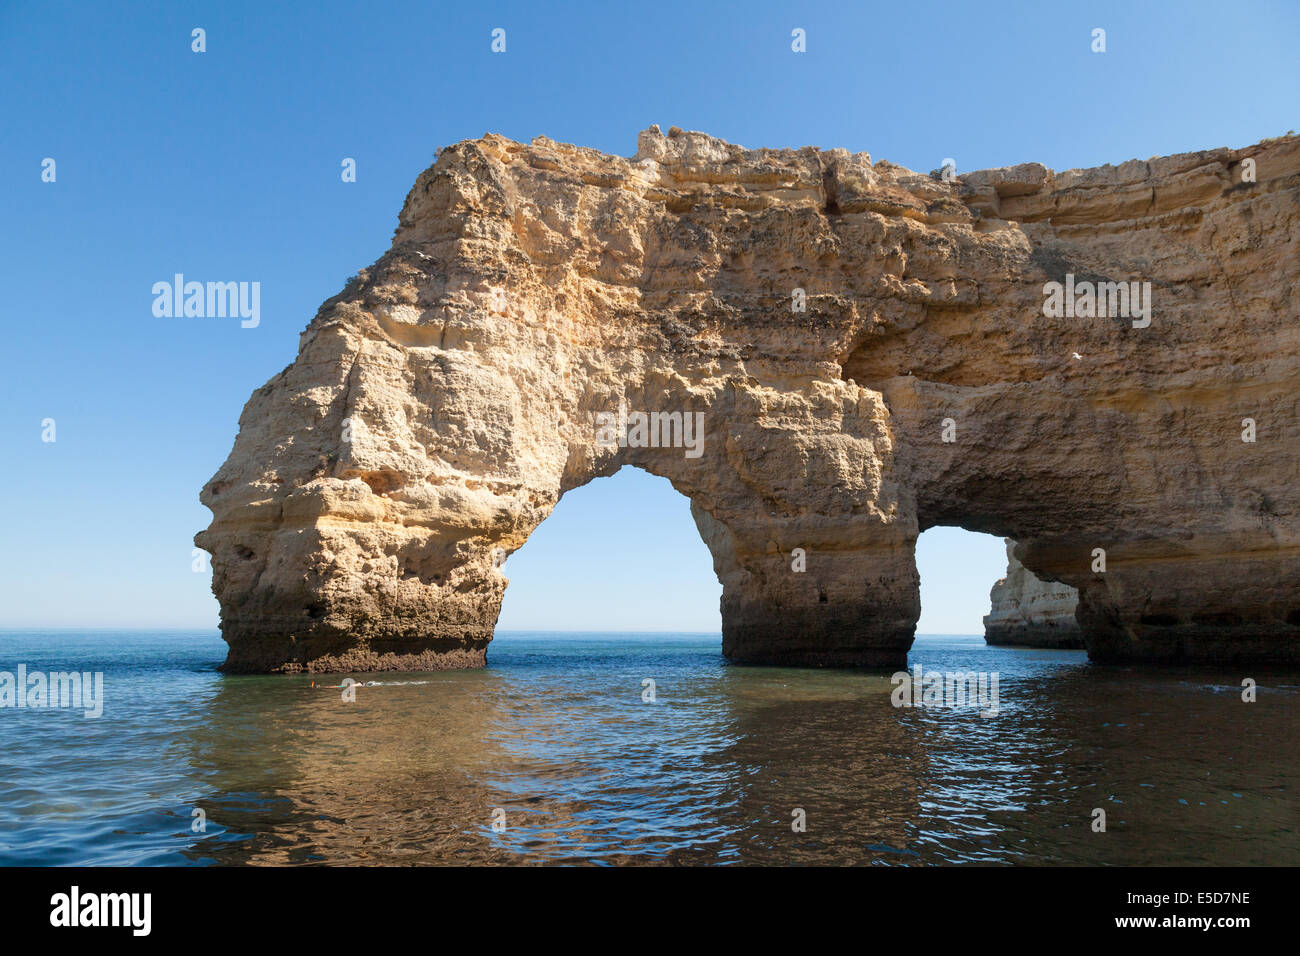 Grotte rocciose e gli archi a Praia da Marinha ( Marinha Beach ), Algarve, Portogallo, Europa Foto Stock